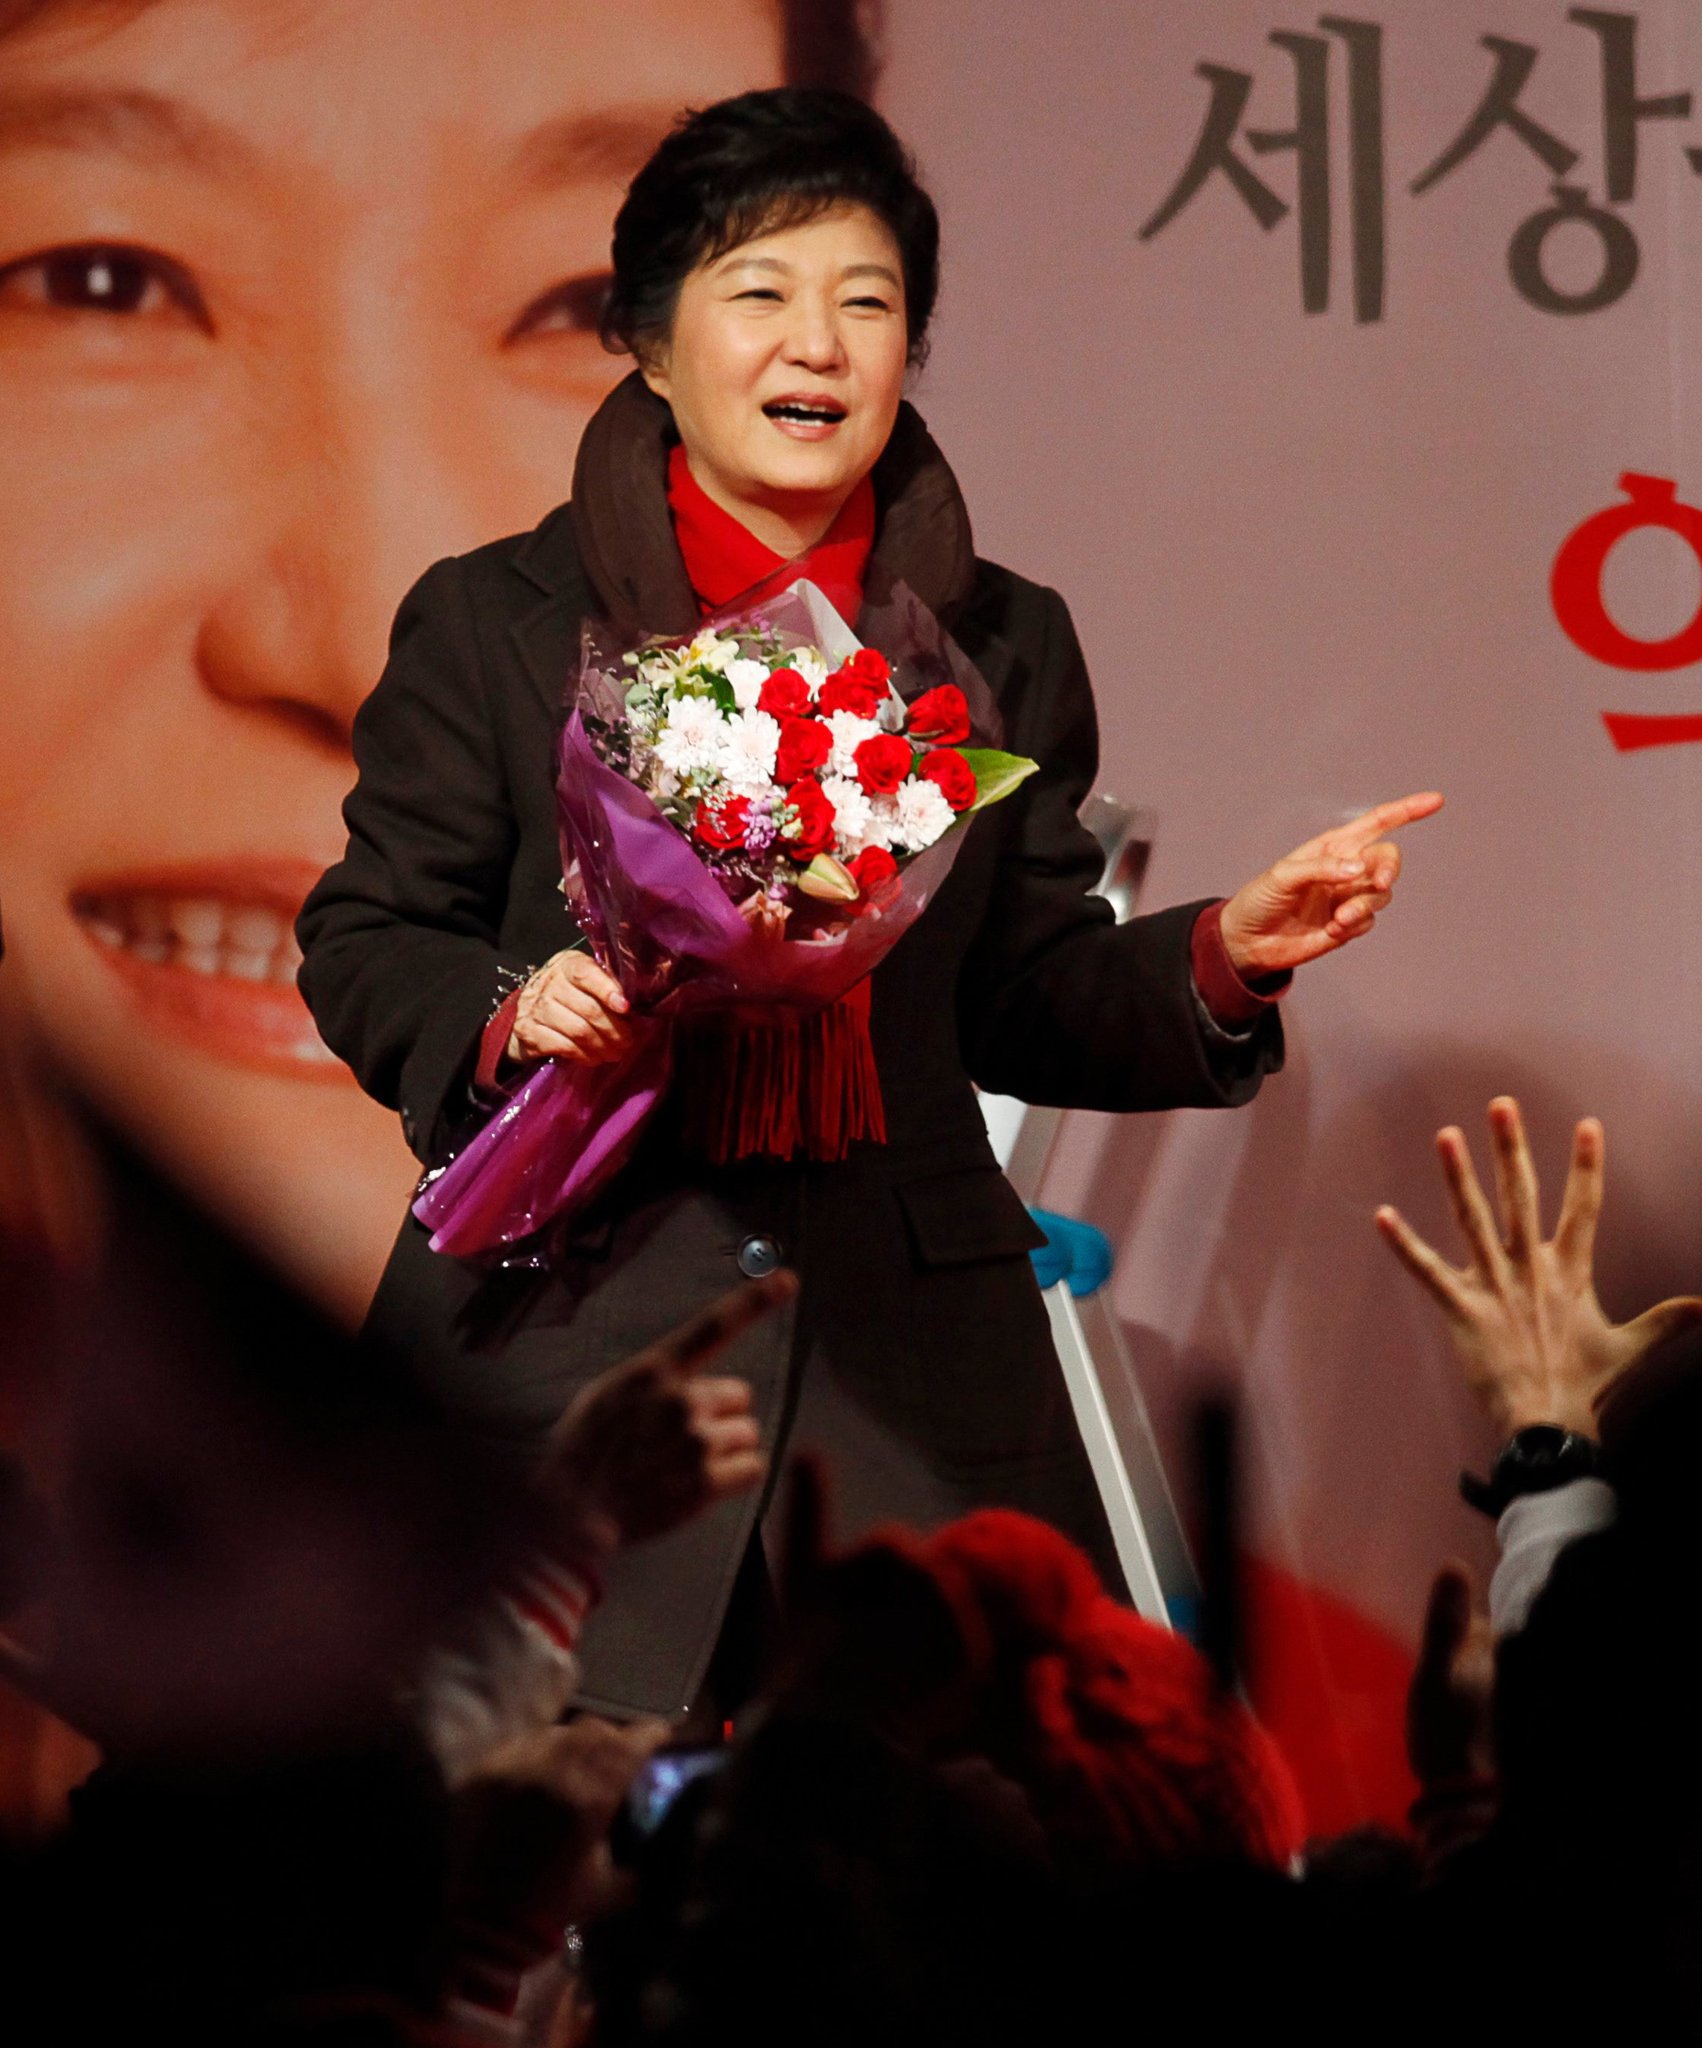 فوز أول امرأة برئاسة كوريا الجنوبية: ابنة الديكتاتور .. تعيدها الديمقراطية إلى القصر الرئاسي